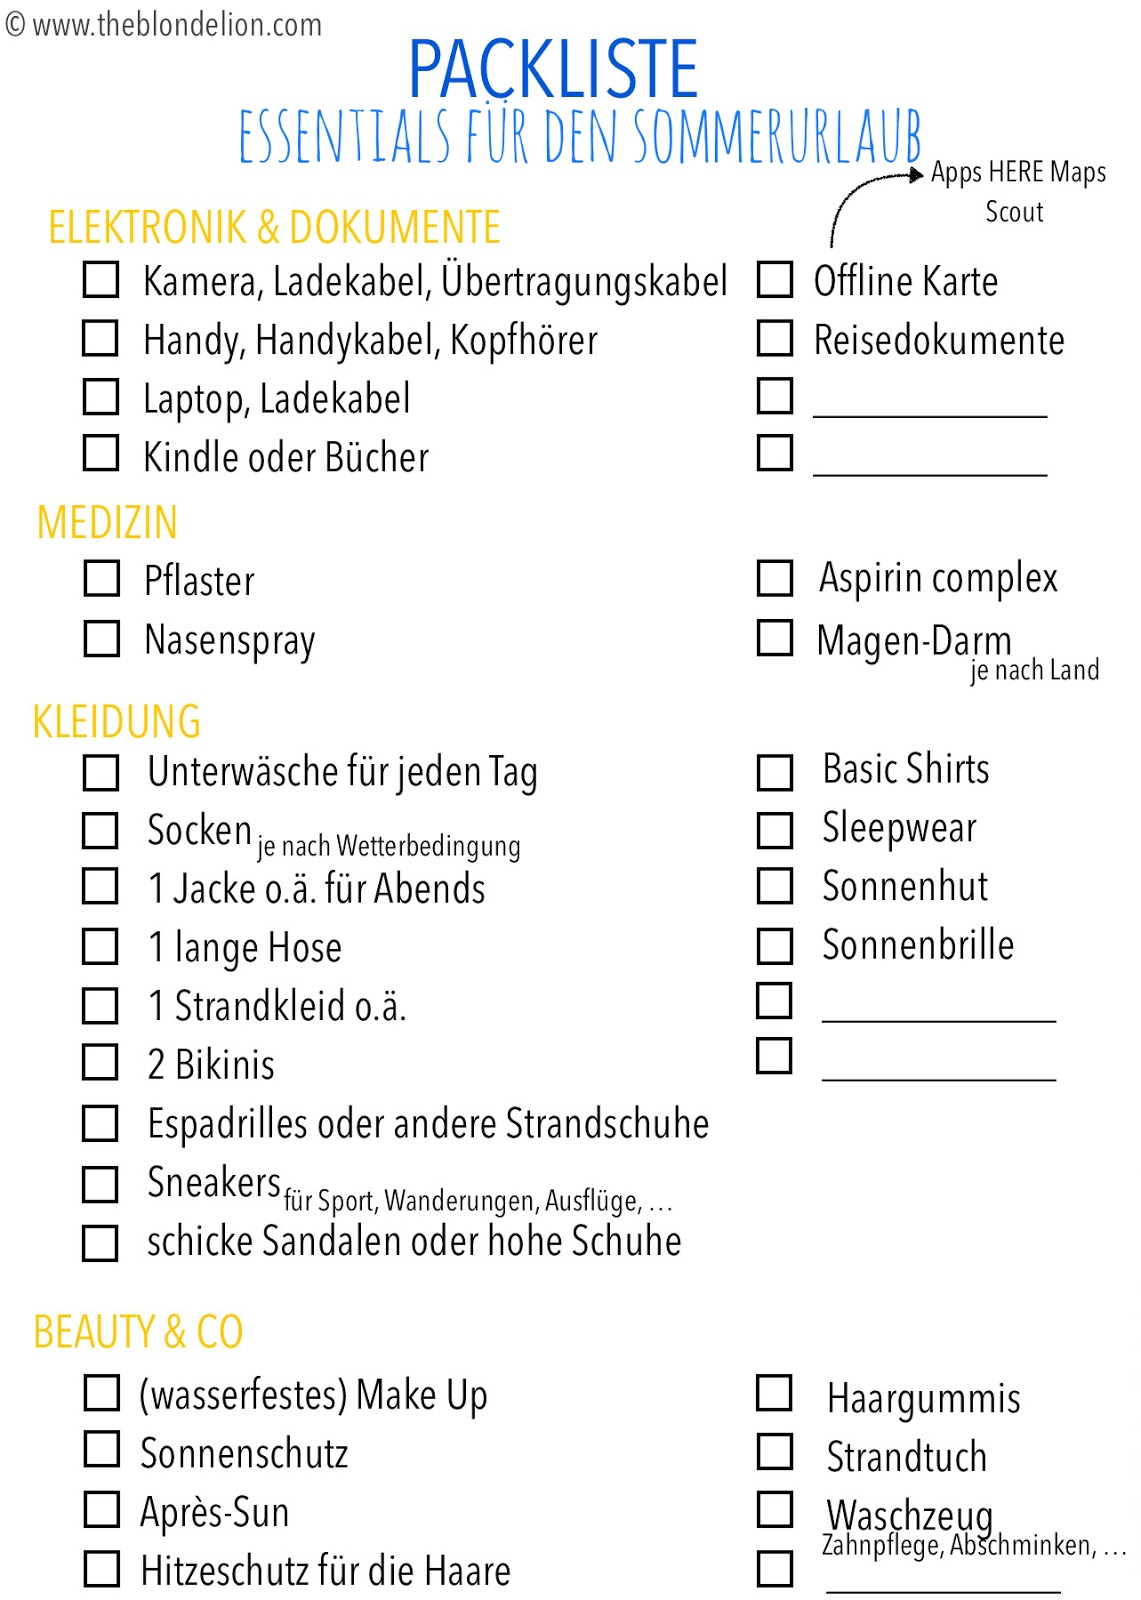 Packliste Sommerurlaub free download packen liste abhaken